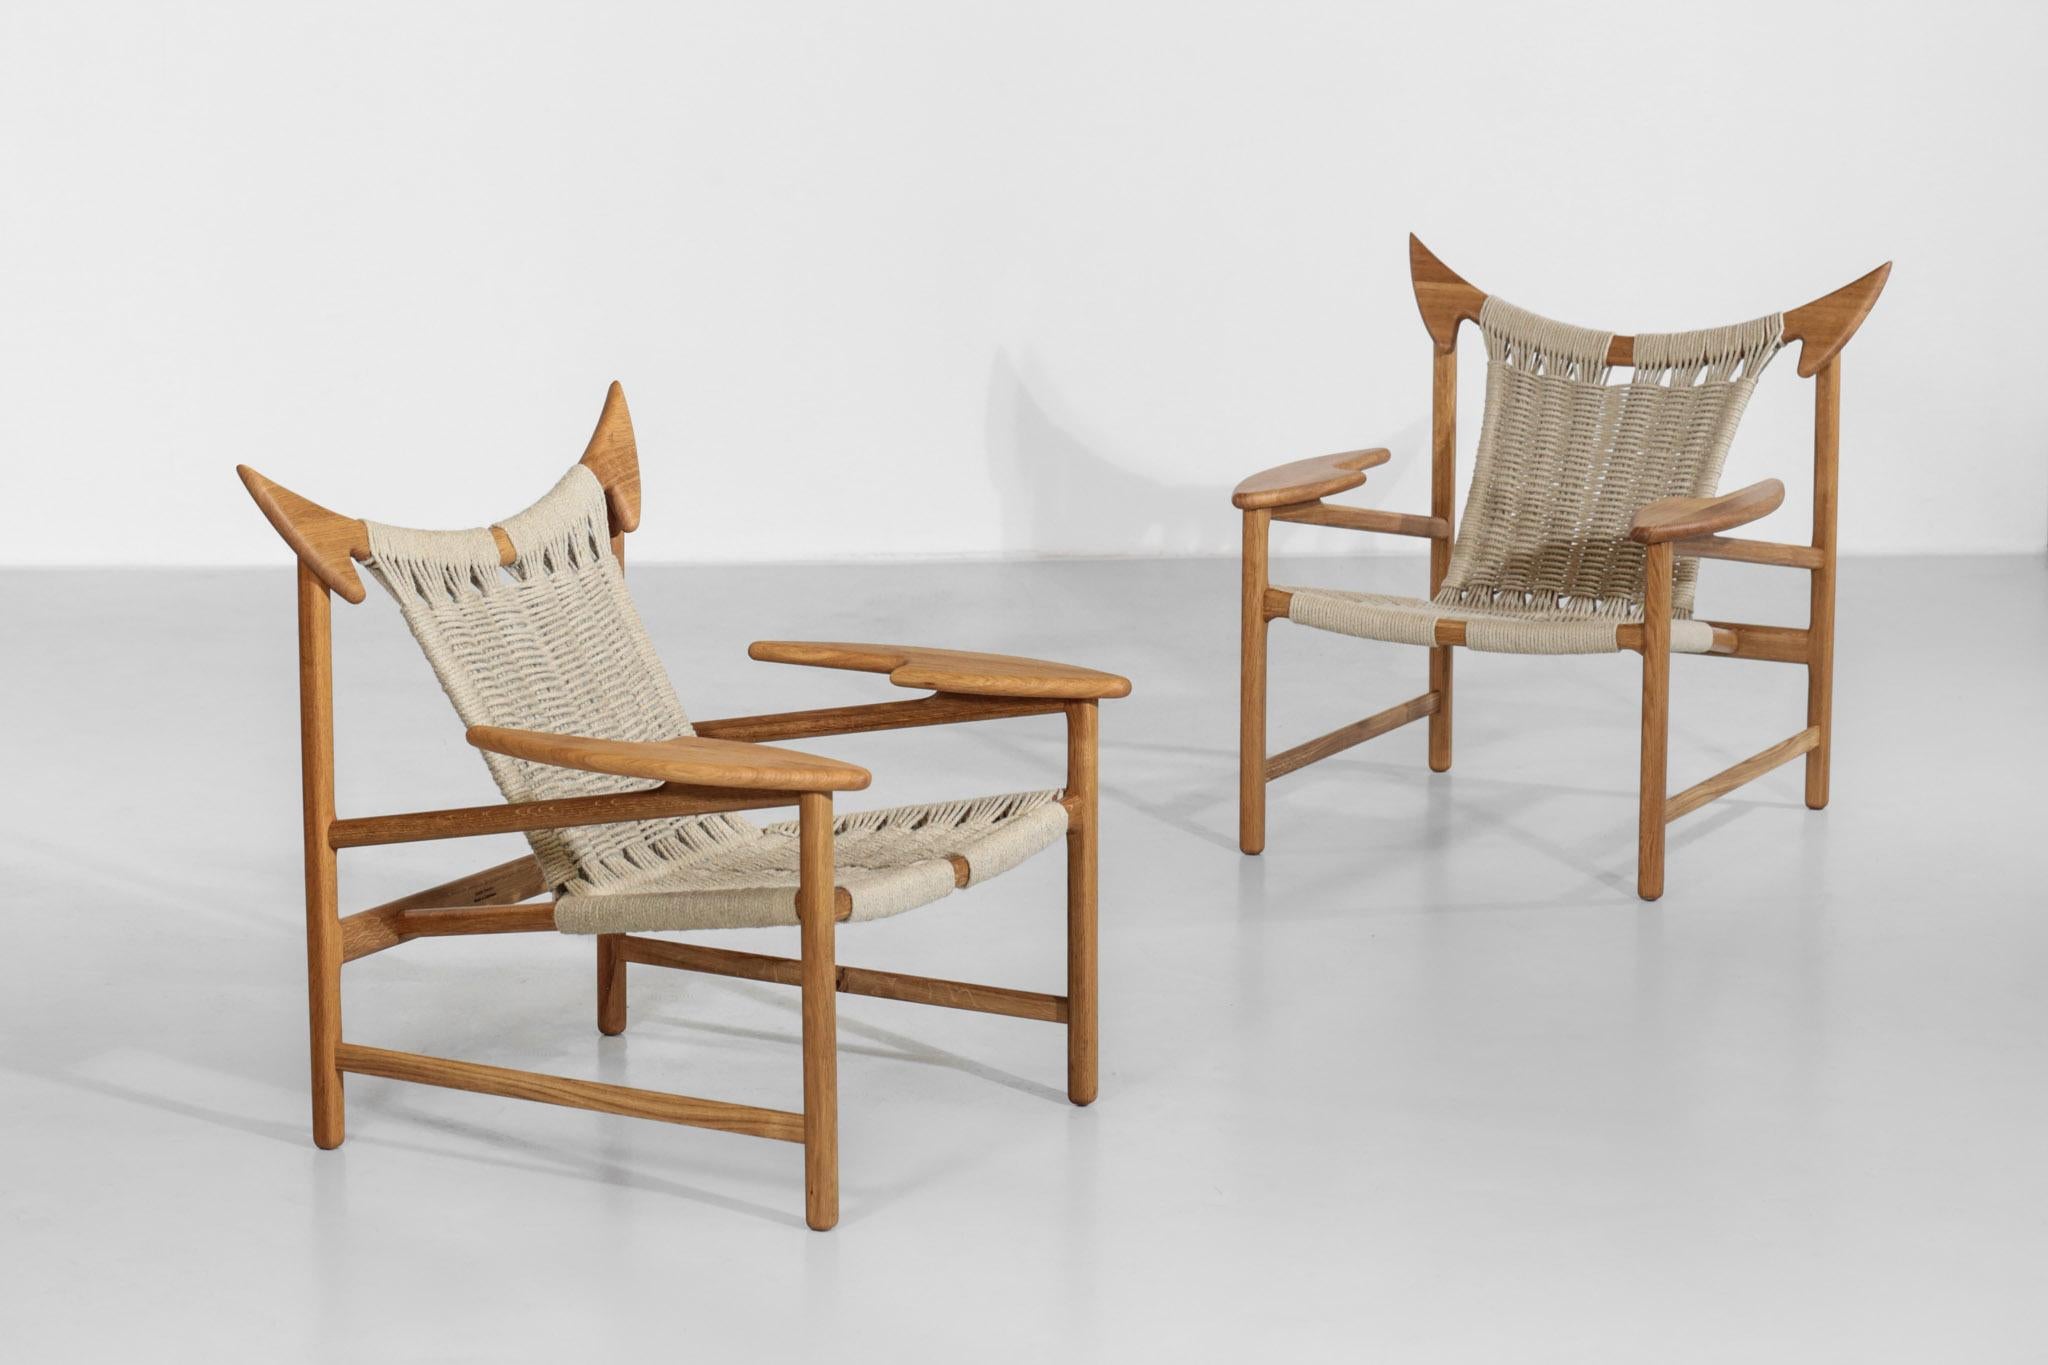 Paar dänische Sessel de fauteuils. Moderne Herstellung durch Godsker Tischler. Struktur aus massiver Eiche mit Sitz aus Hanfseil. Alles handgefertigt, unglaubliche Herstellung.